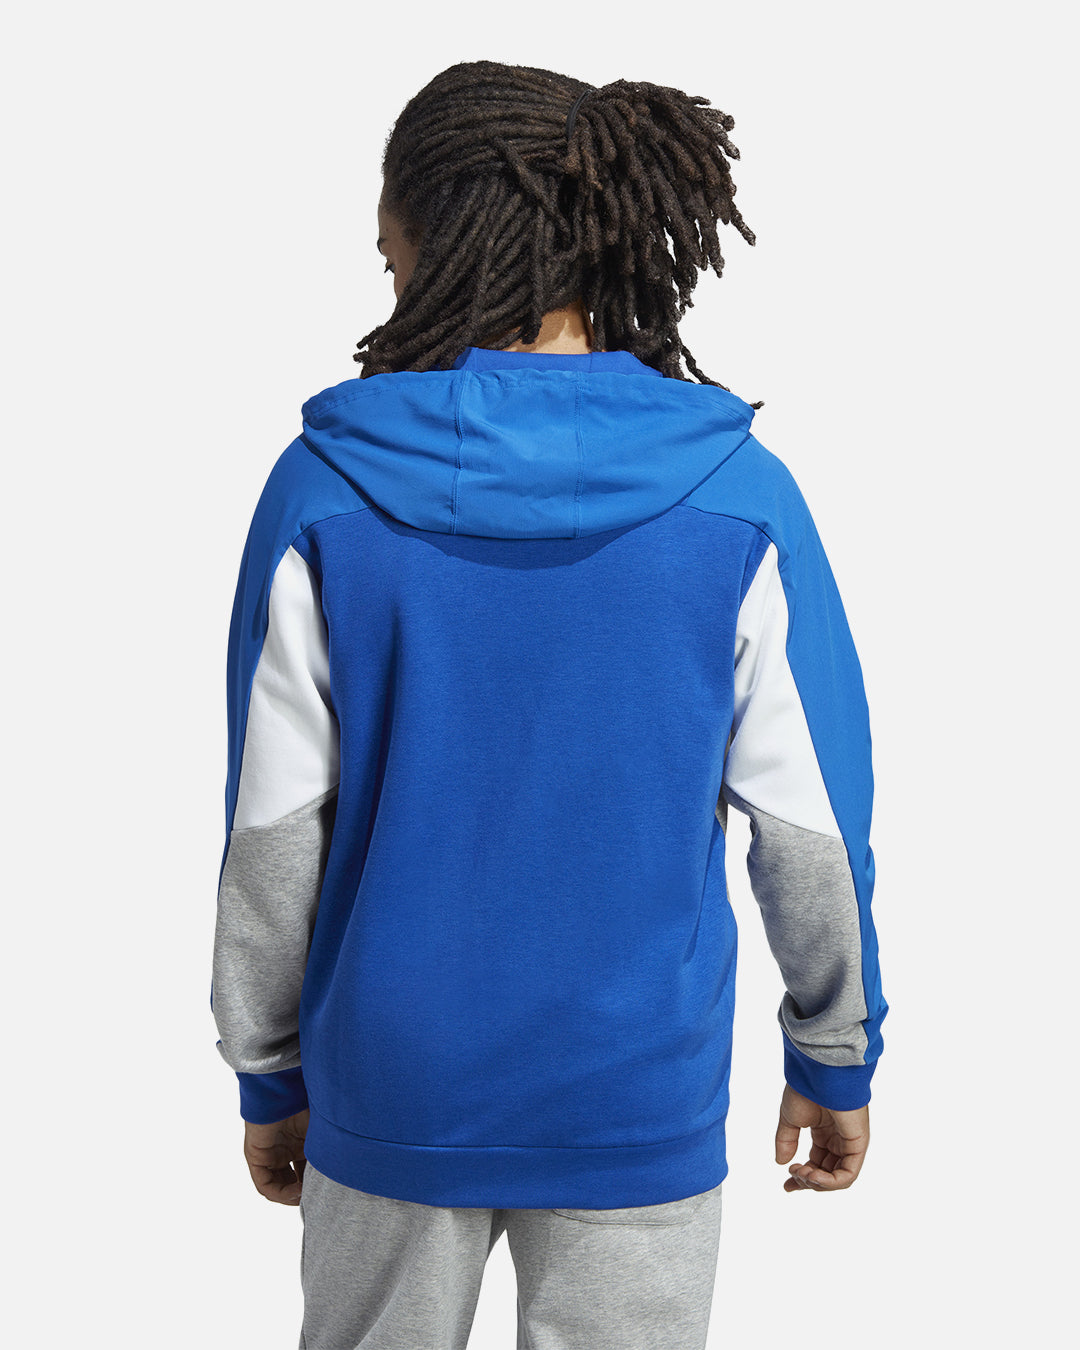 Veste à capuche Adidas Essentials Colorblock - Bleu/Gris/Blanc